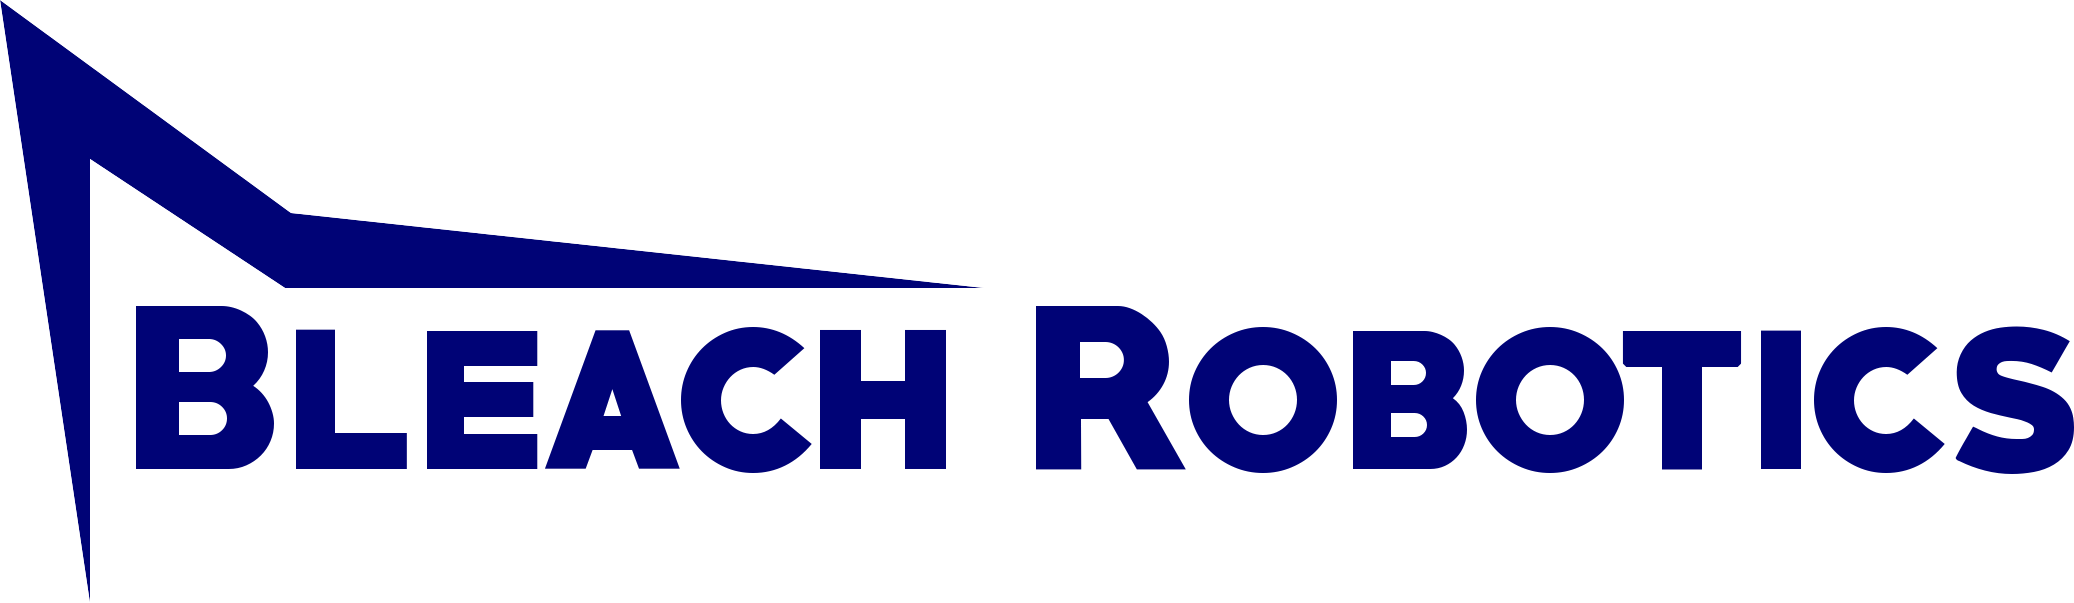 Bleach Robotics Logo